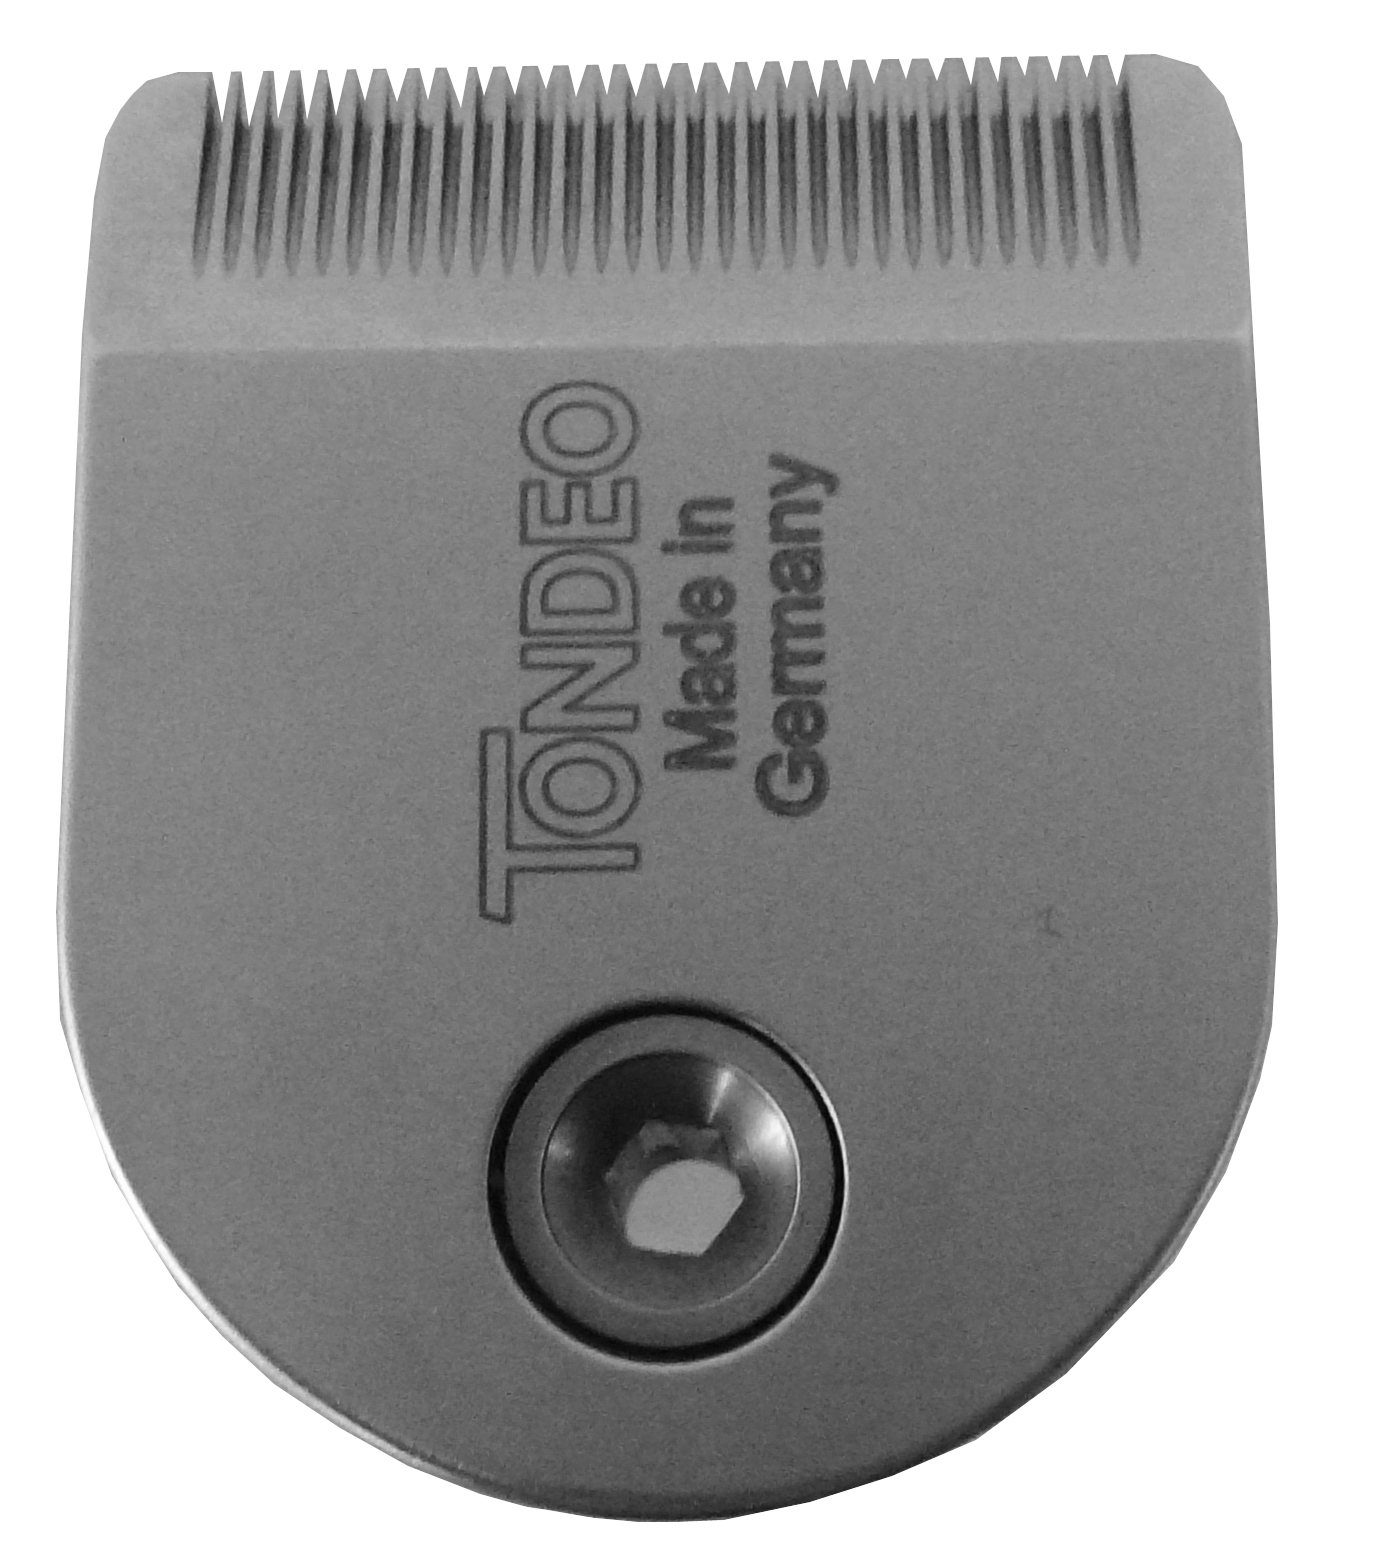 Schneideplatte für Tondeo Eco XS Haarschneidemaschine